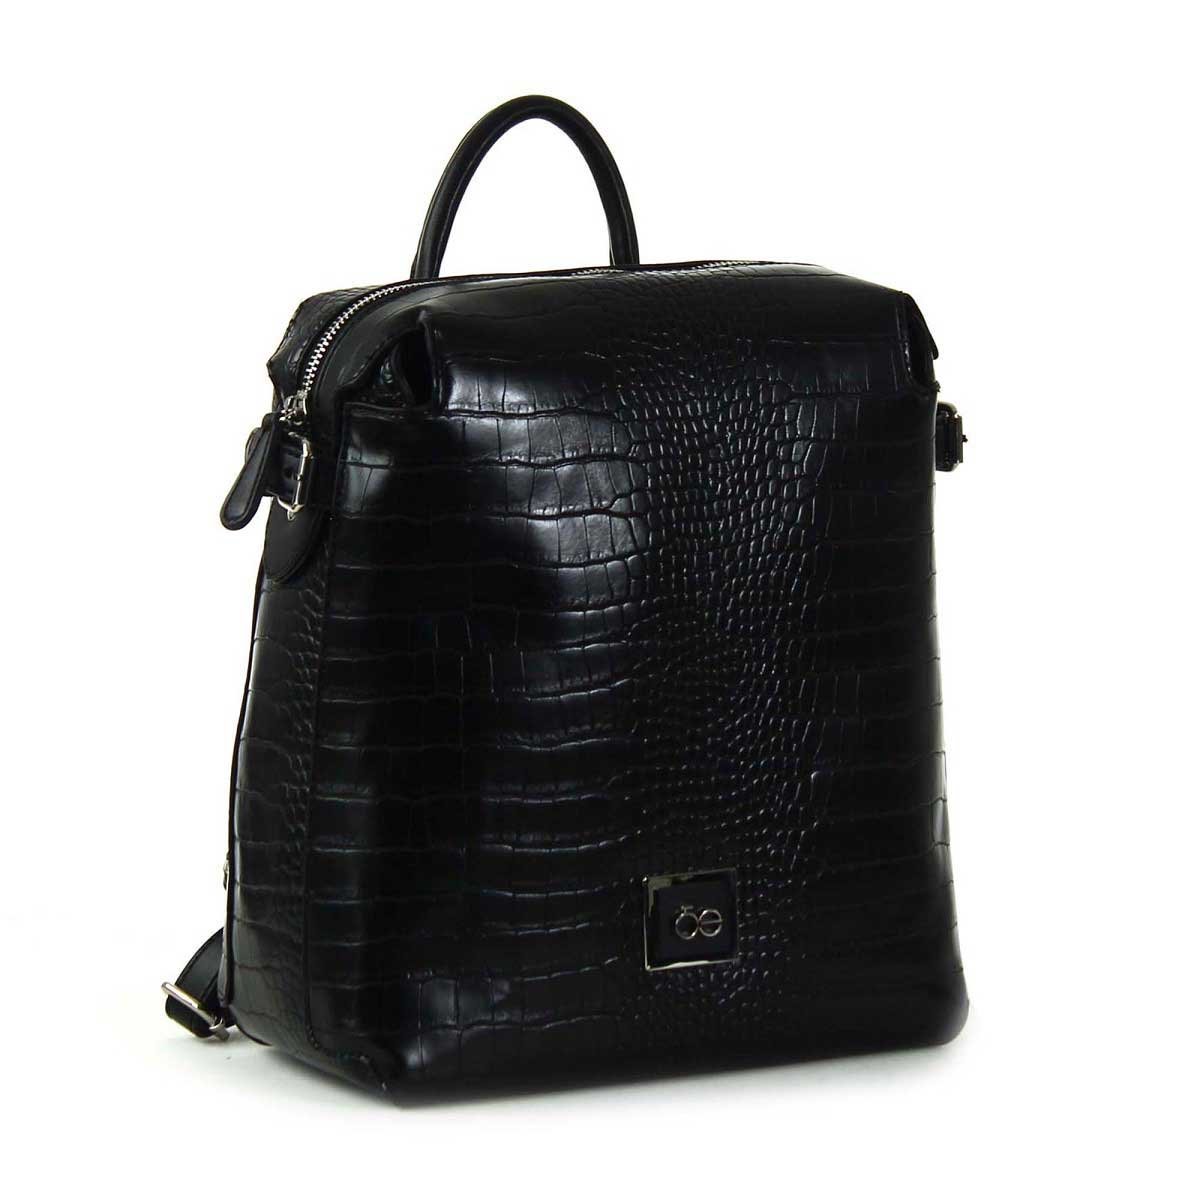 Backpack Negra con Textura de Cocodrilo Cloe